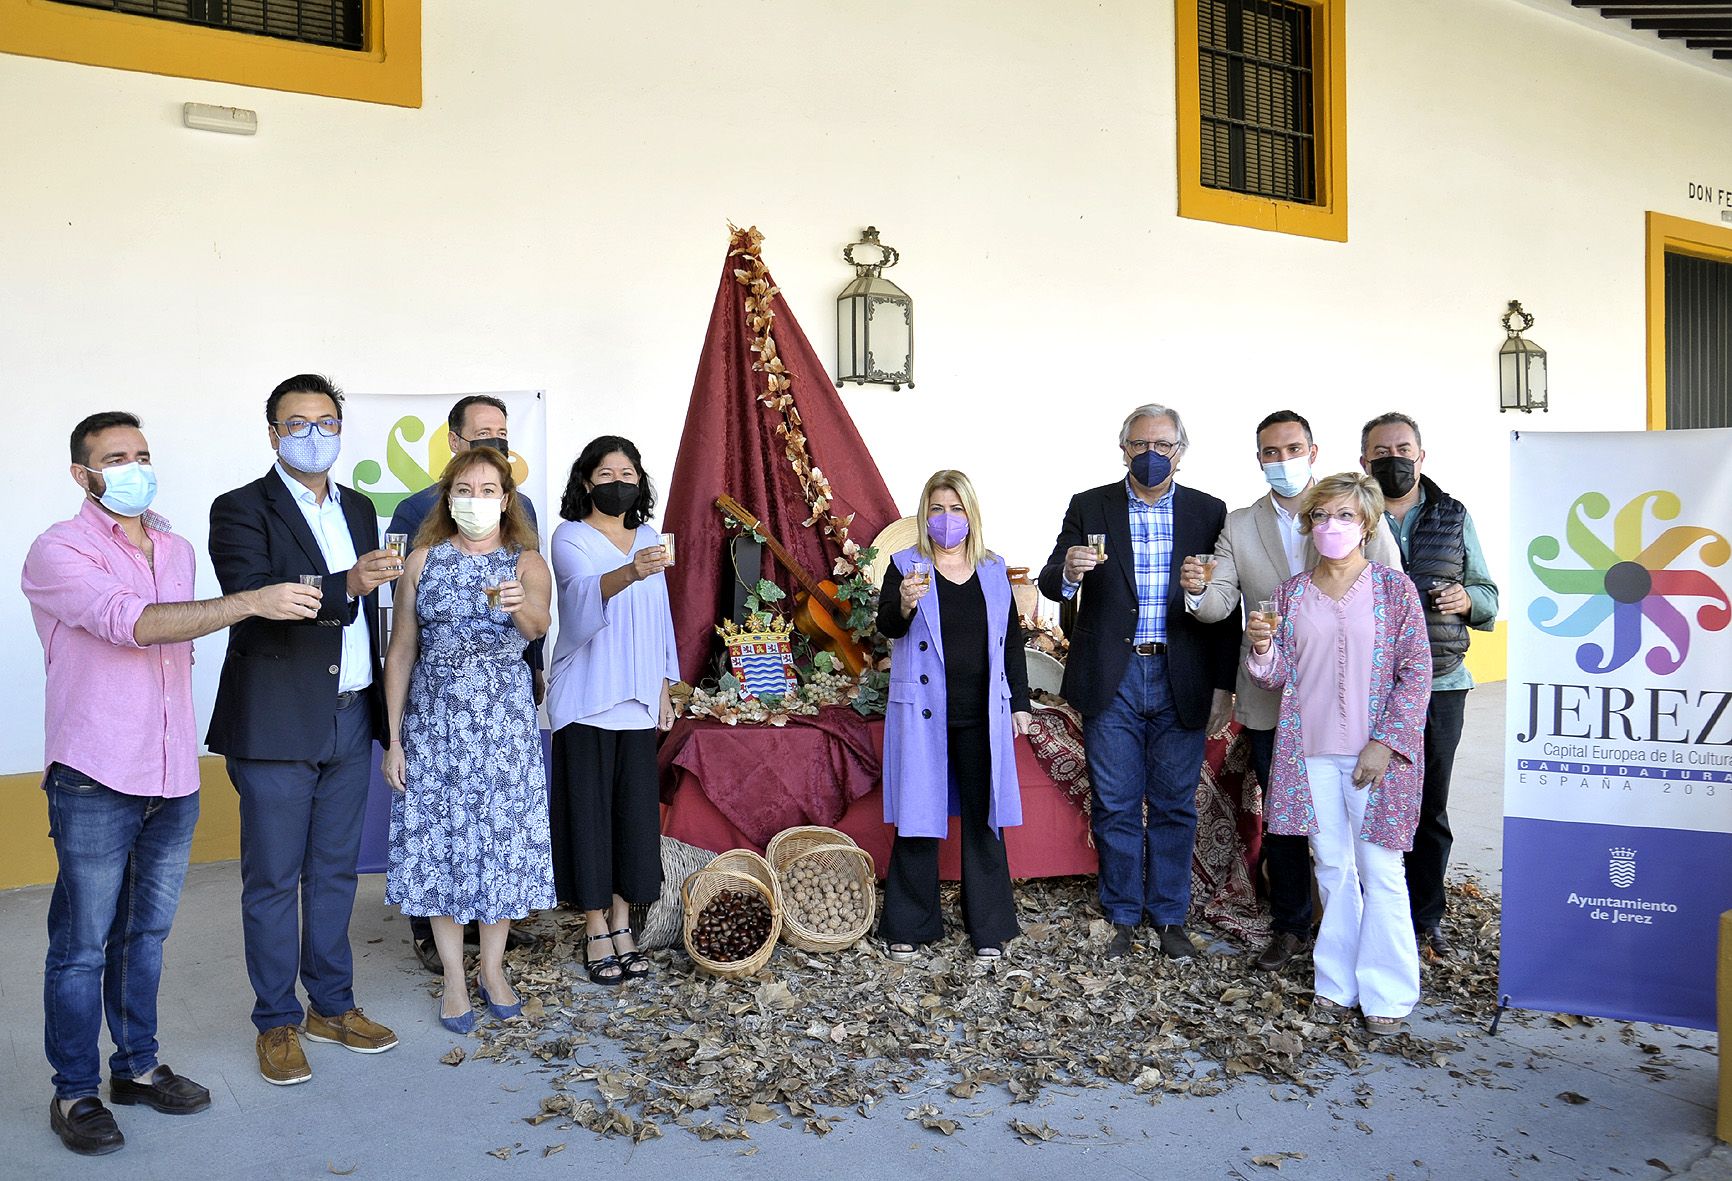 Fiesta del Mosto en la plaza del Arenal y otros 100 planes para 'callejear Jerez' en otoño.